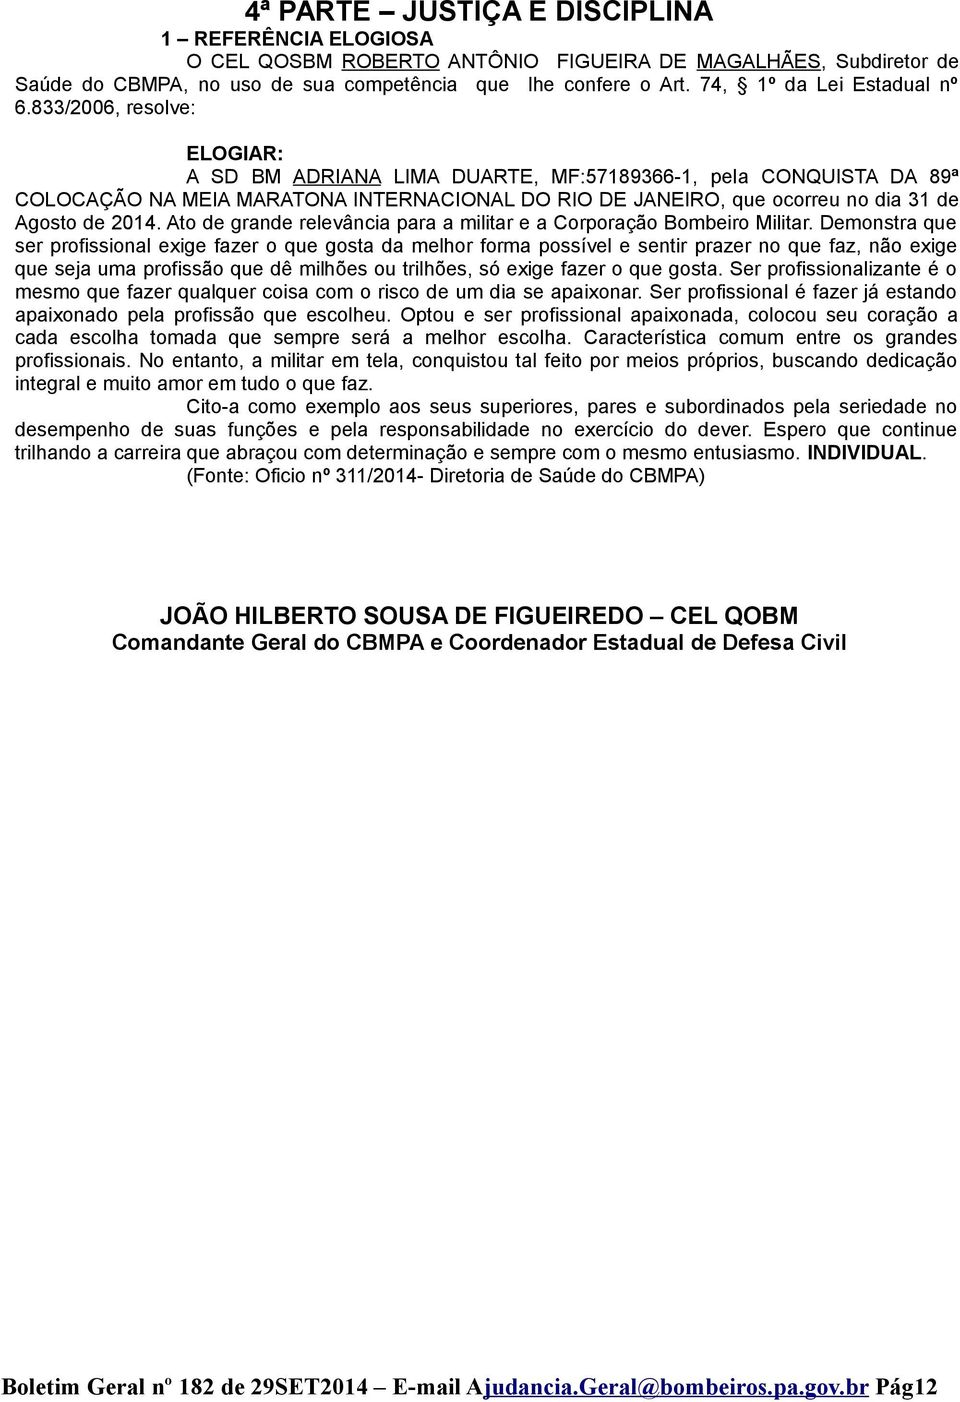 833/2006, resolve: ELOGIAR: A SD BM ADRIANA LIMA DUARTE, MF:57189366-1, pela CONQUISTA DA 89ª COLOCAÇÃO NA MEIA MARATONA INTERNACIONAL DO RIO DE JANEIRO, que ocorreu no dia 31 de Agosto de 2014.